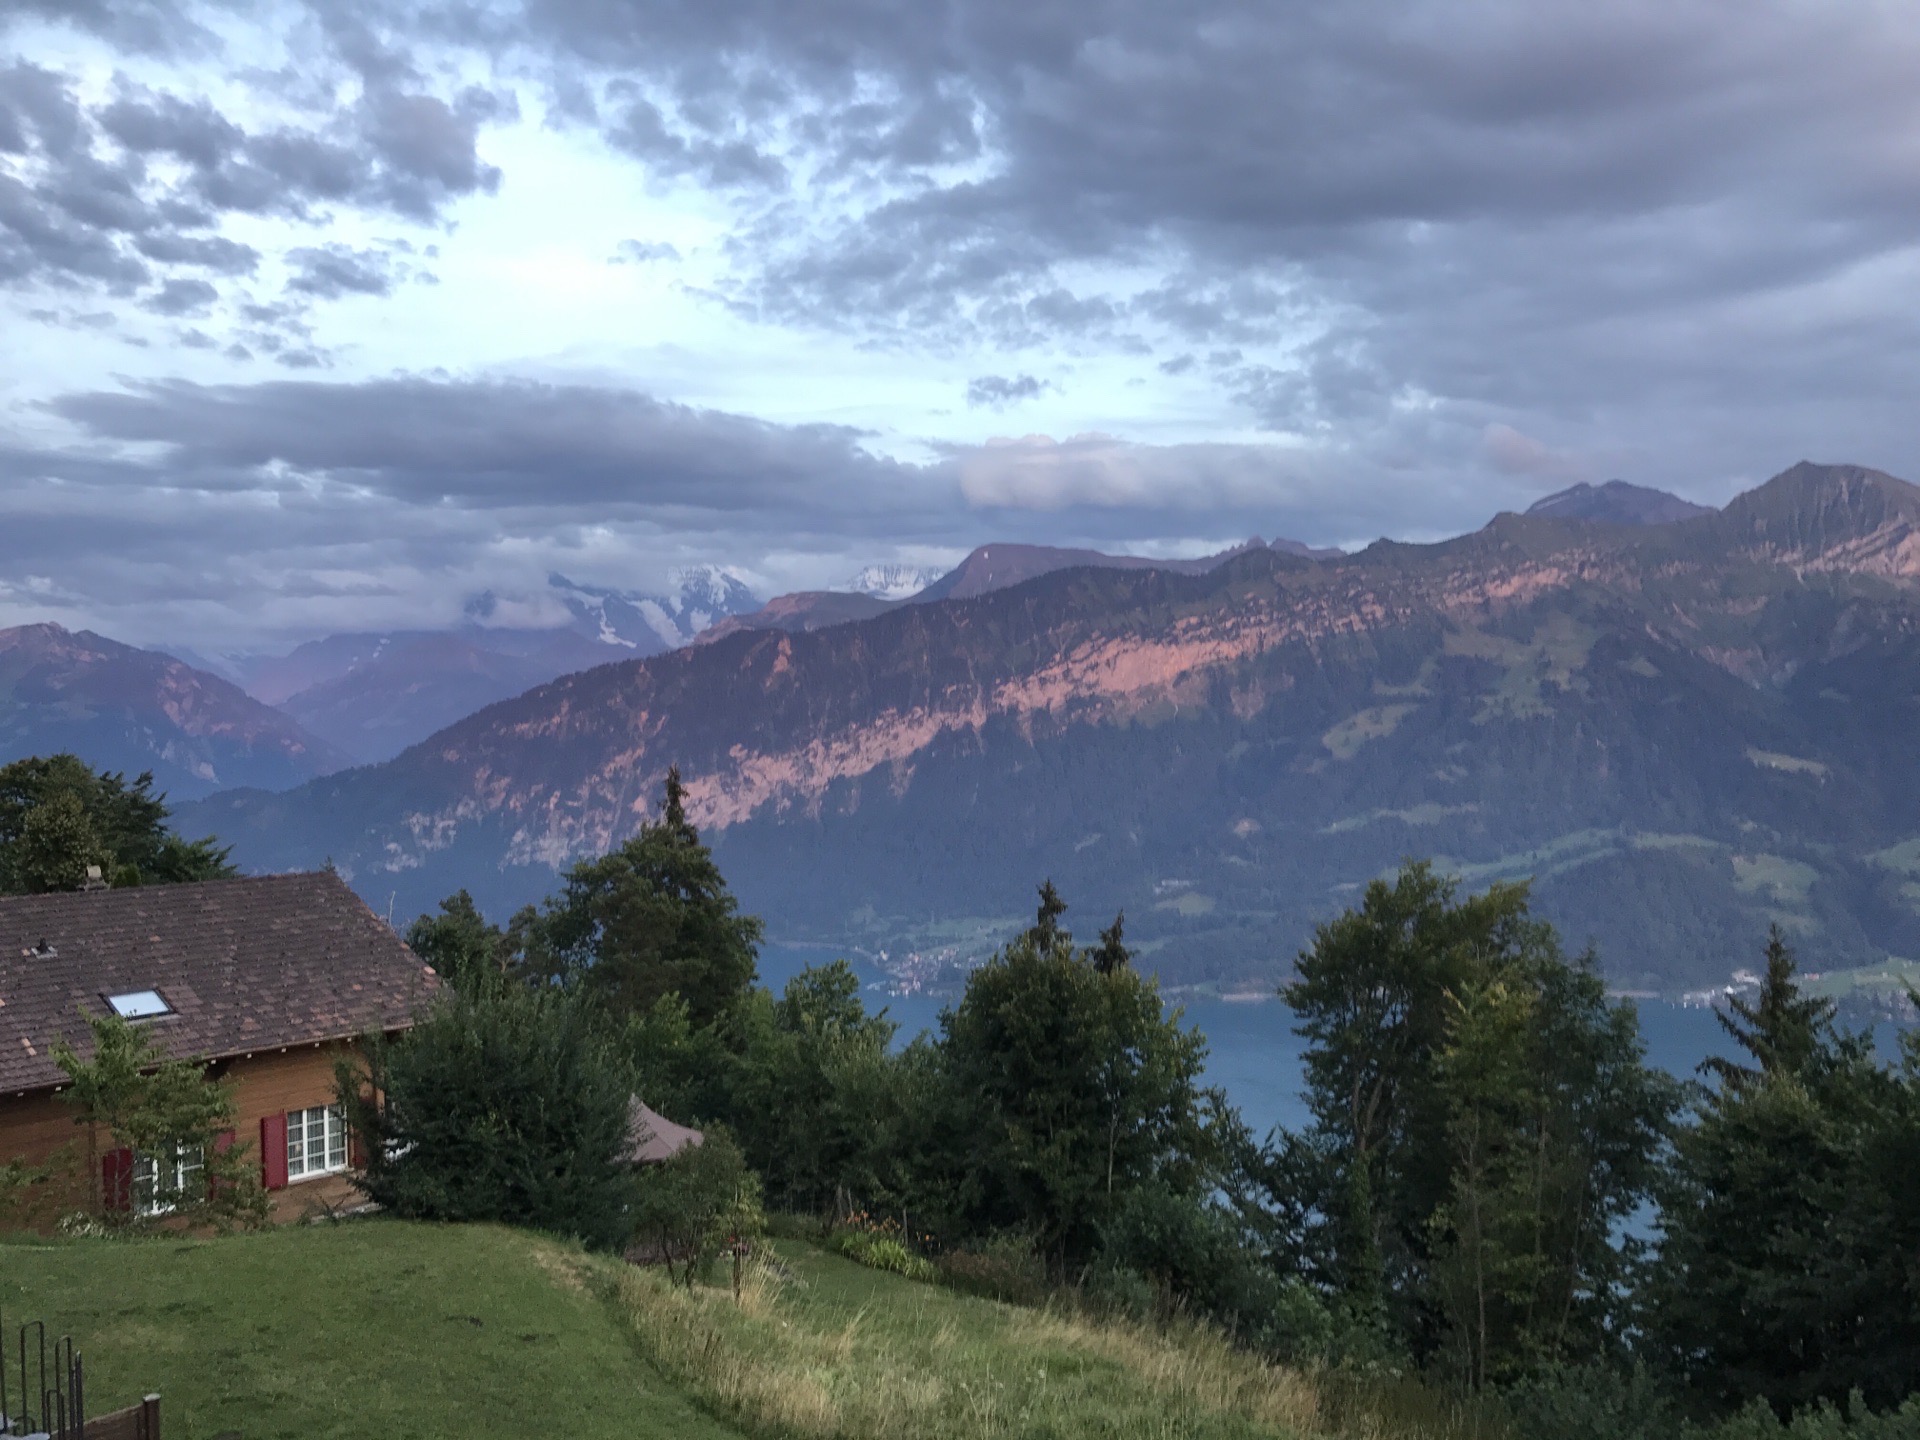 我在瑞士楚格跑步 楚格是瑞士一个小镇，距离琉森很近。楚格有一个湖，非常漂亮，人口不多，适合居住，据说